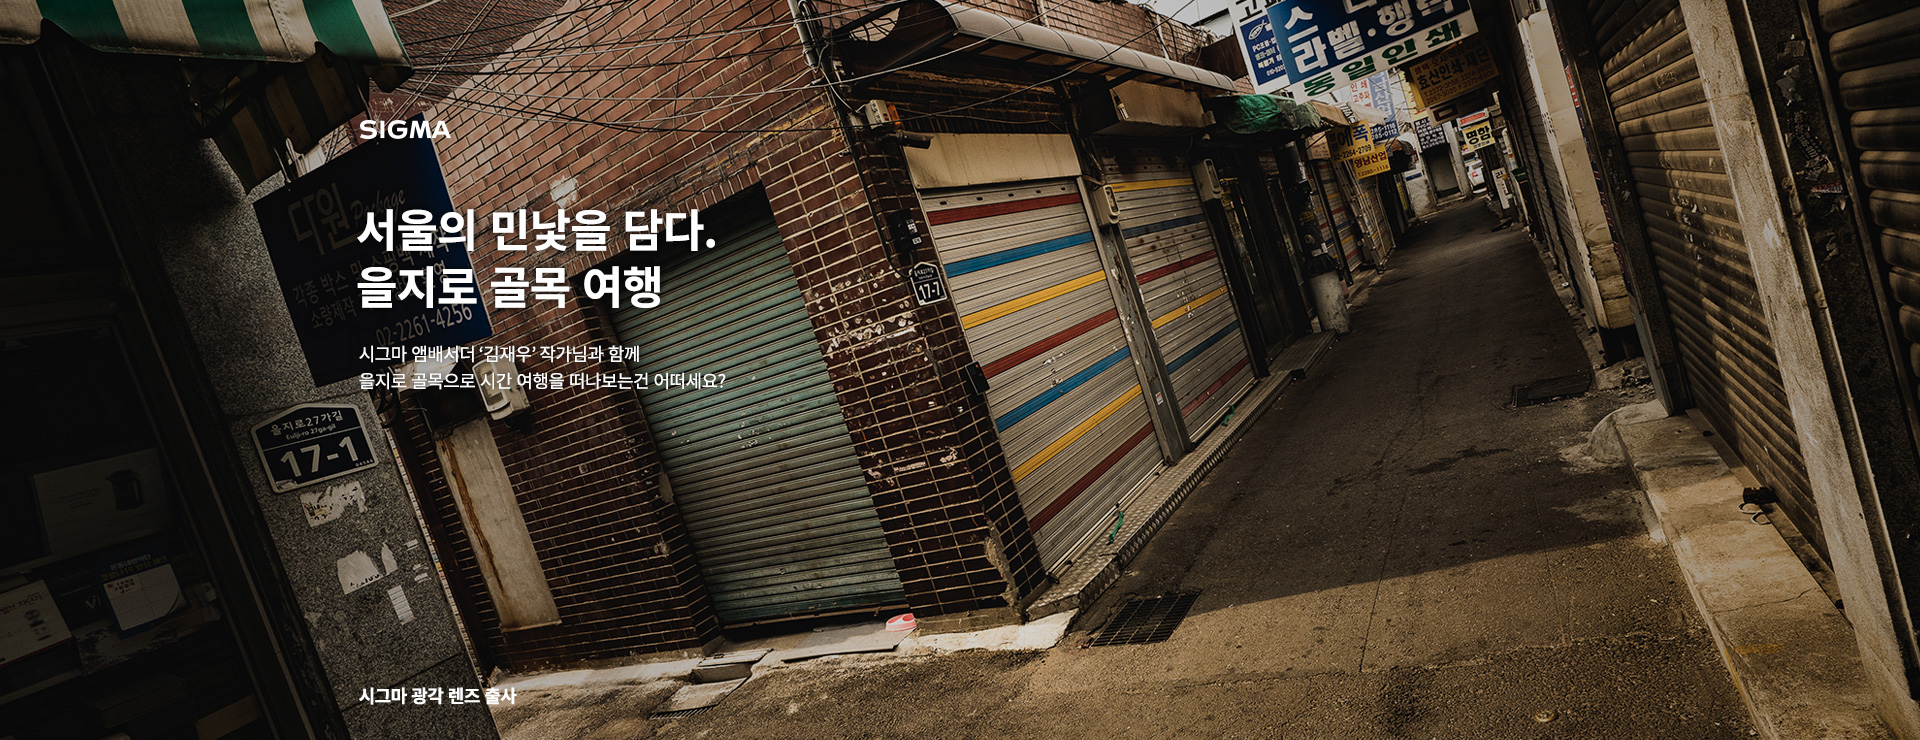 서울의 민낯을 담다. 을지로 골목 여행